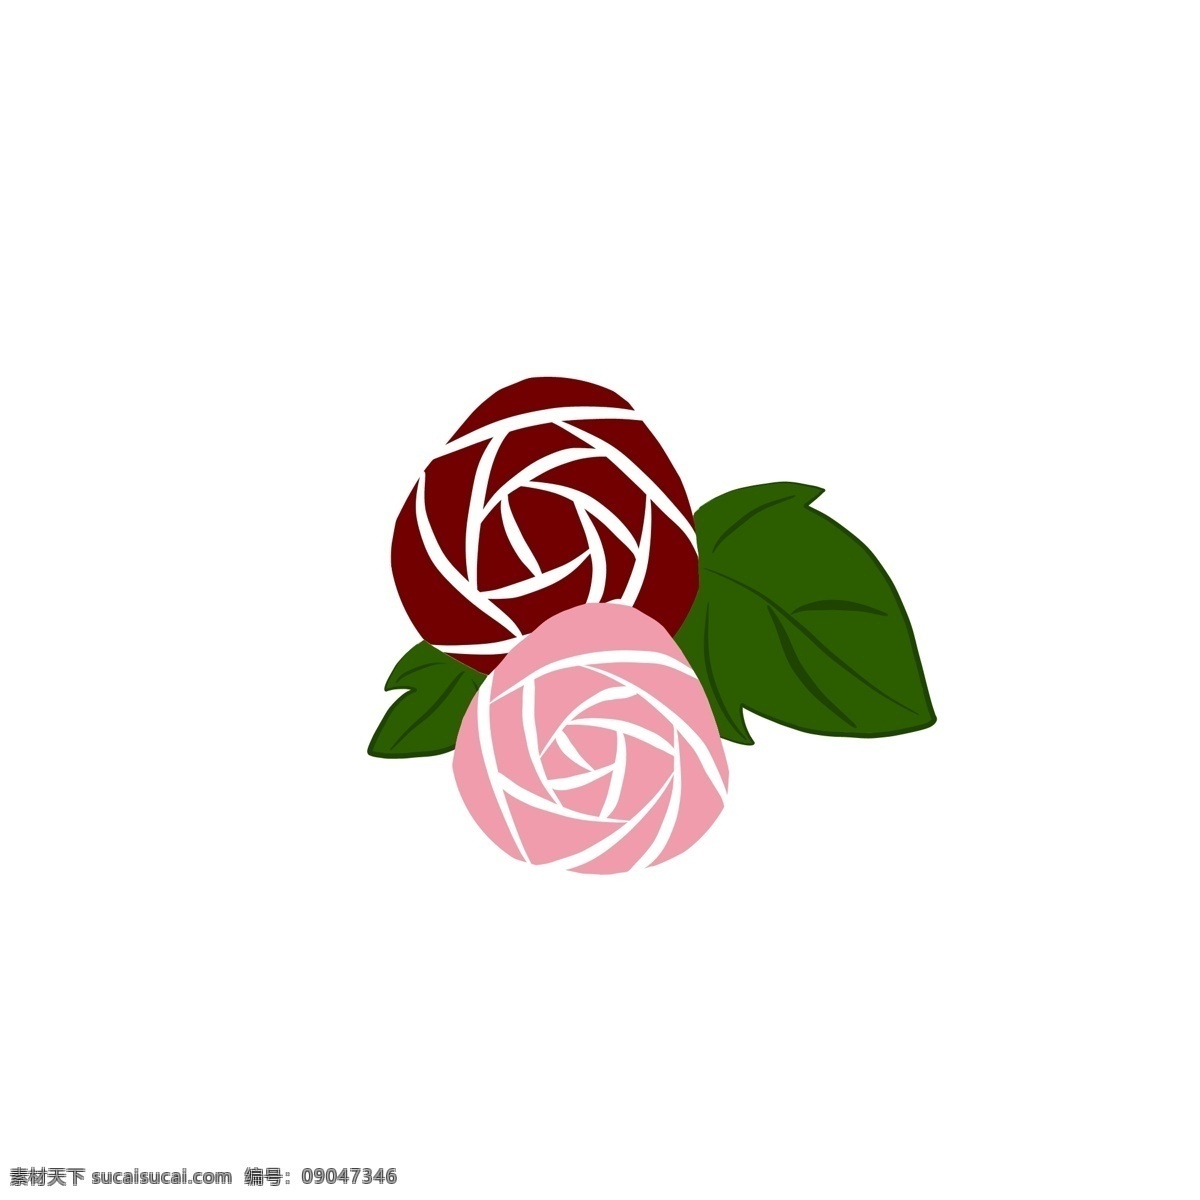 扁平 风 红粉 双色 玫瑰花 小 元素 扁平风 玫瑰图案 花 小清新